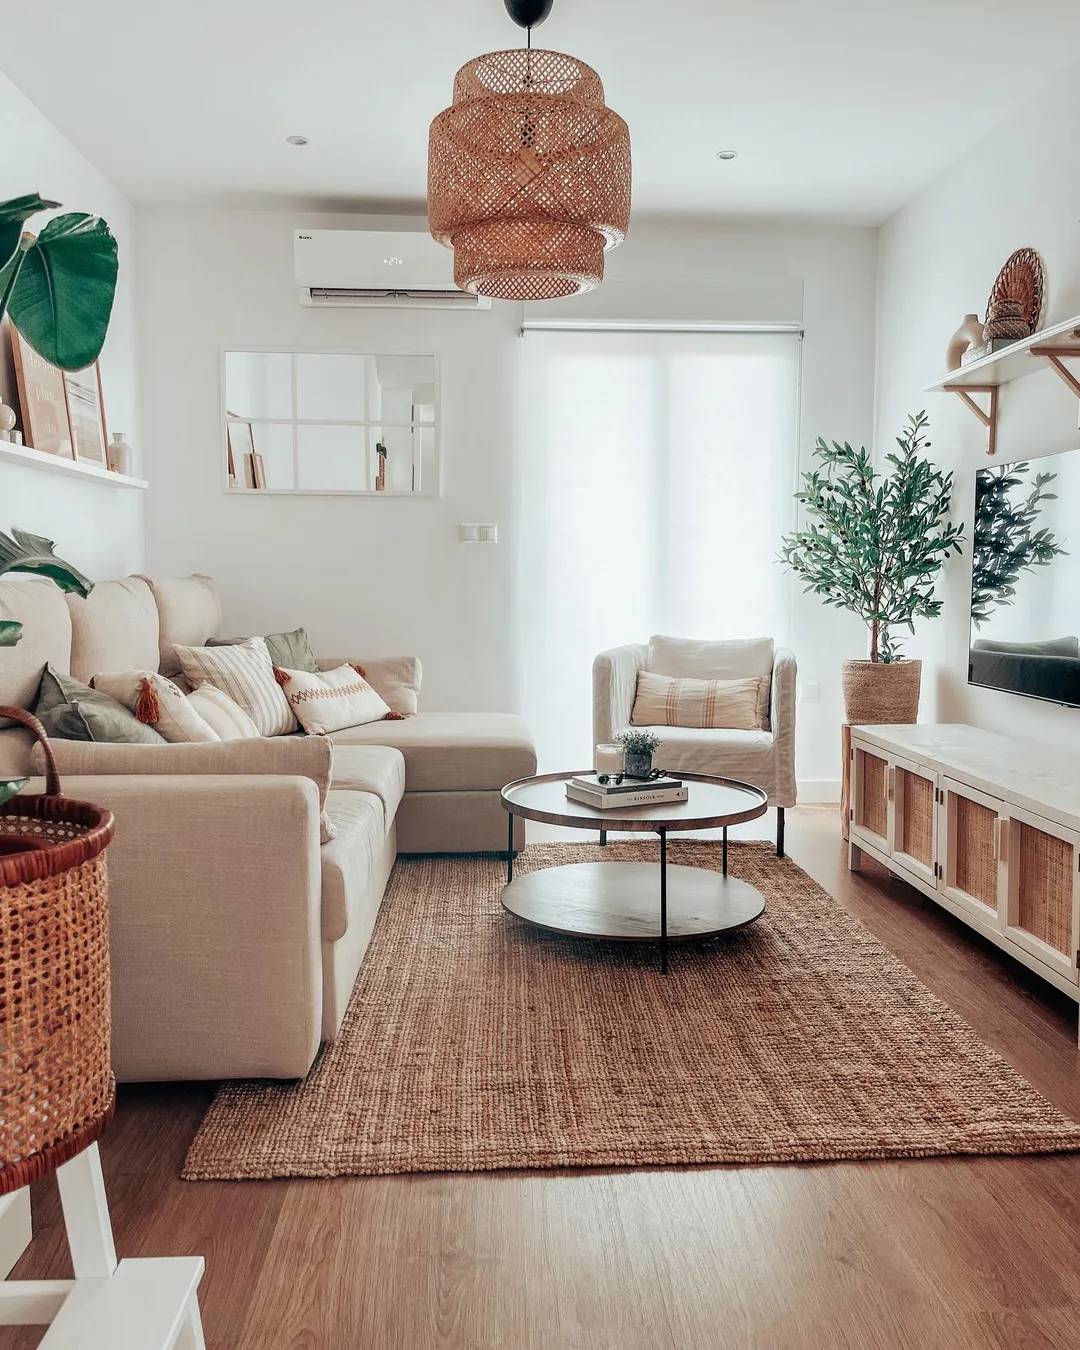 Salón de estilo natural con sofá con chaiselongue, alfombra de yute y estante de pared de IKEA.